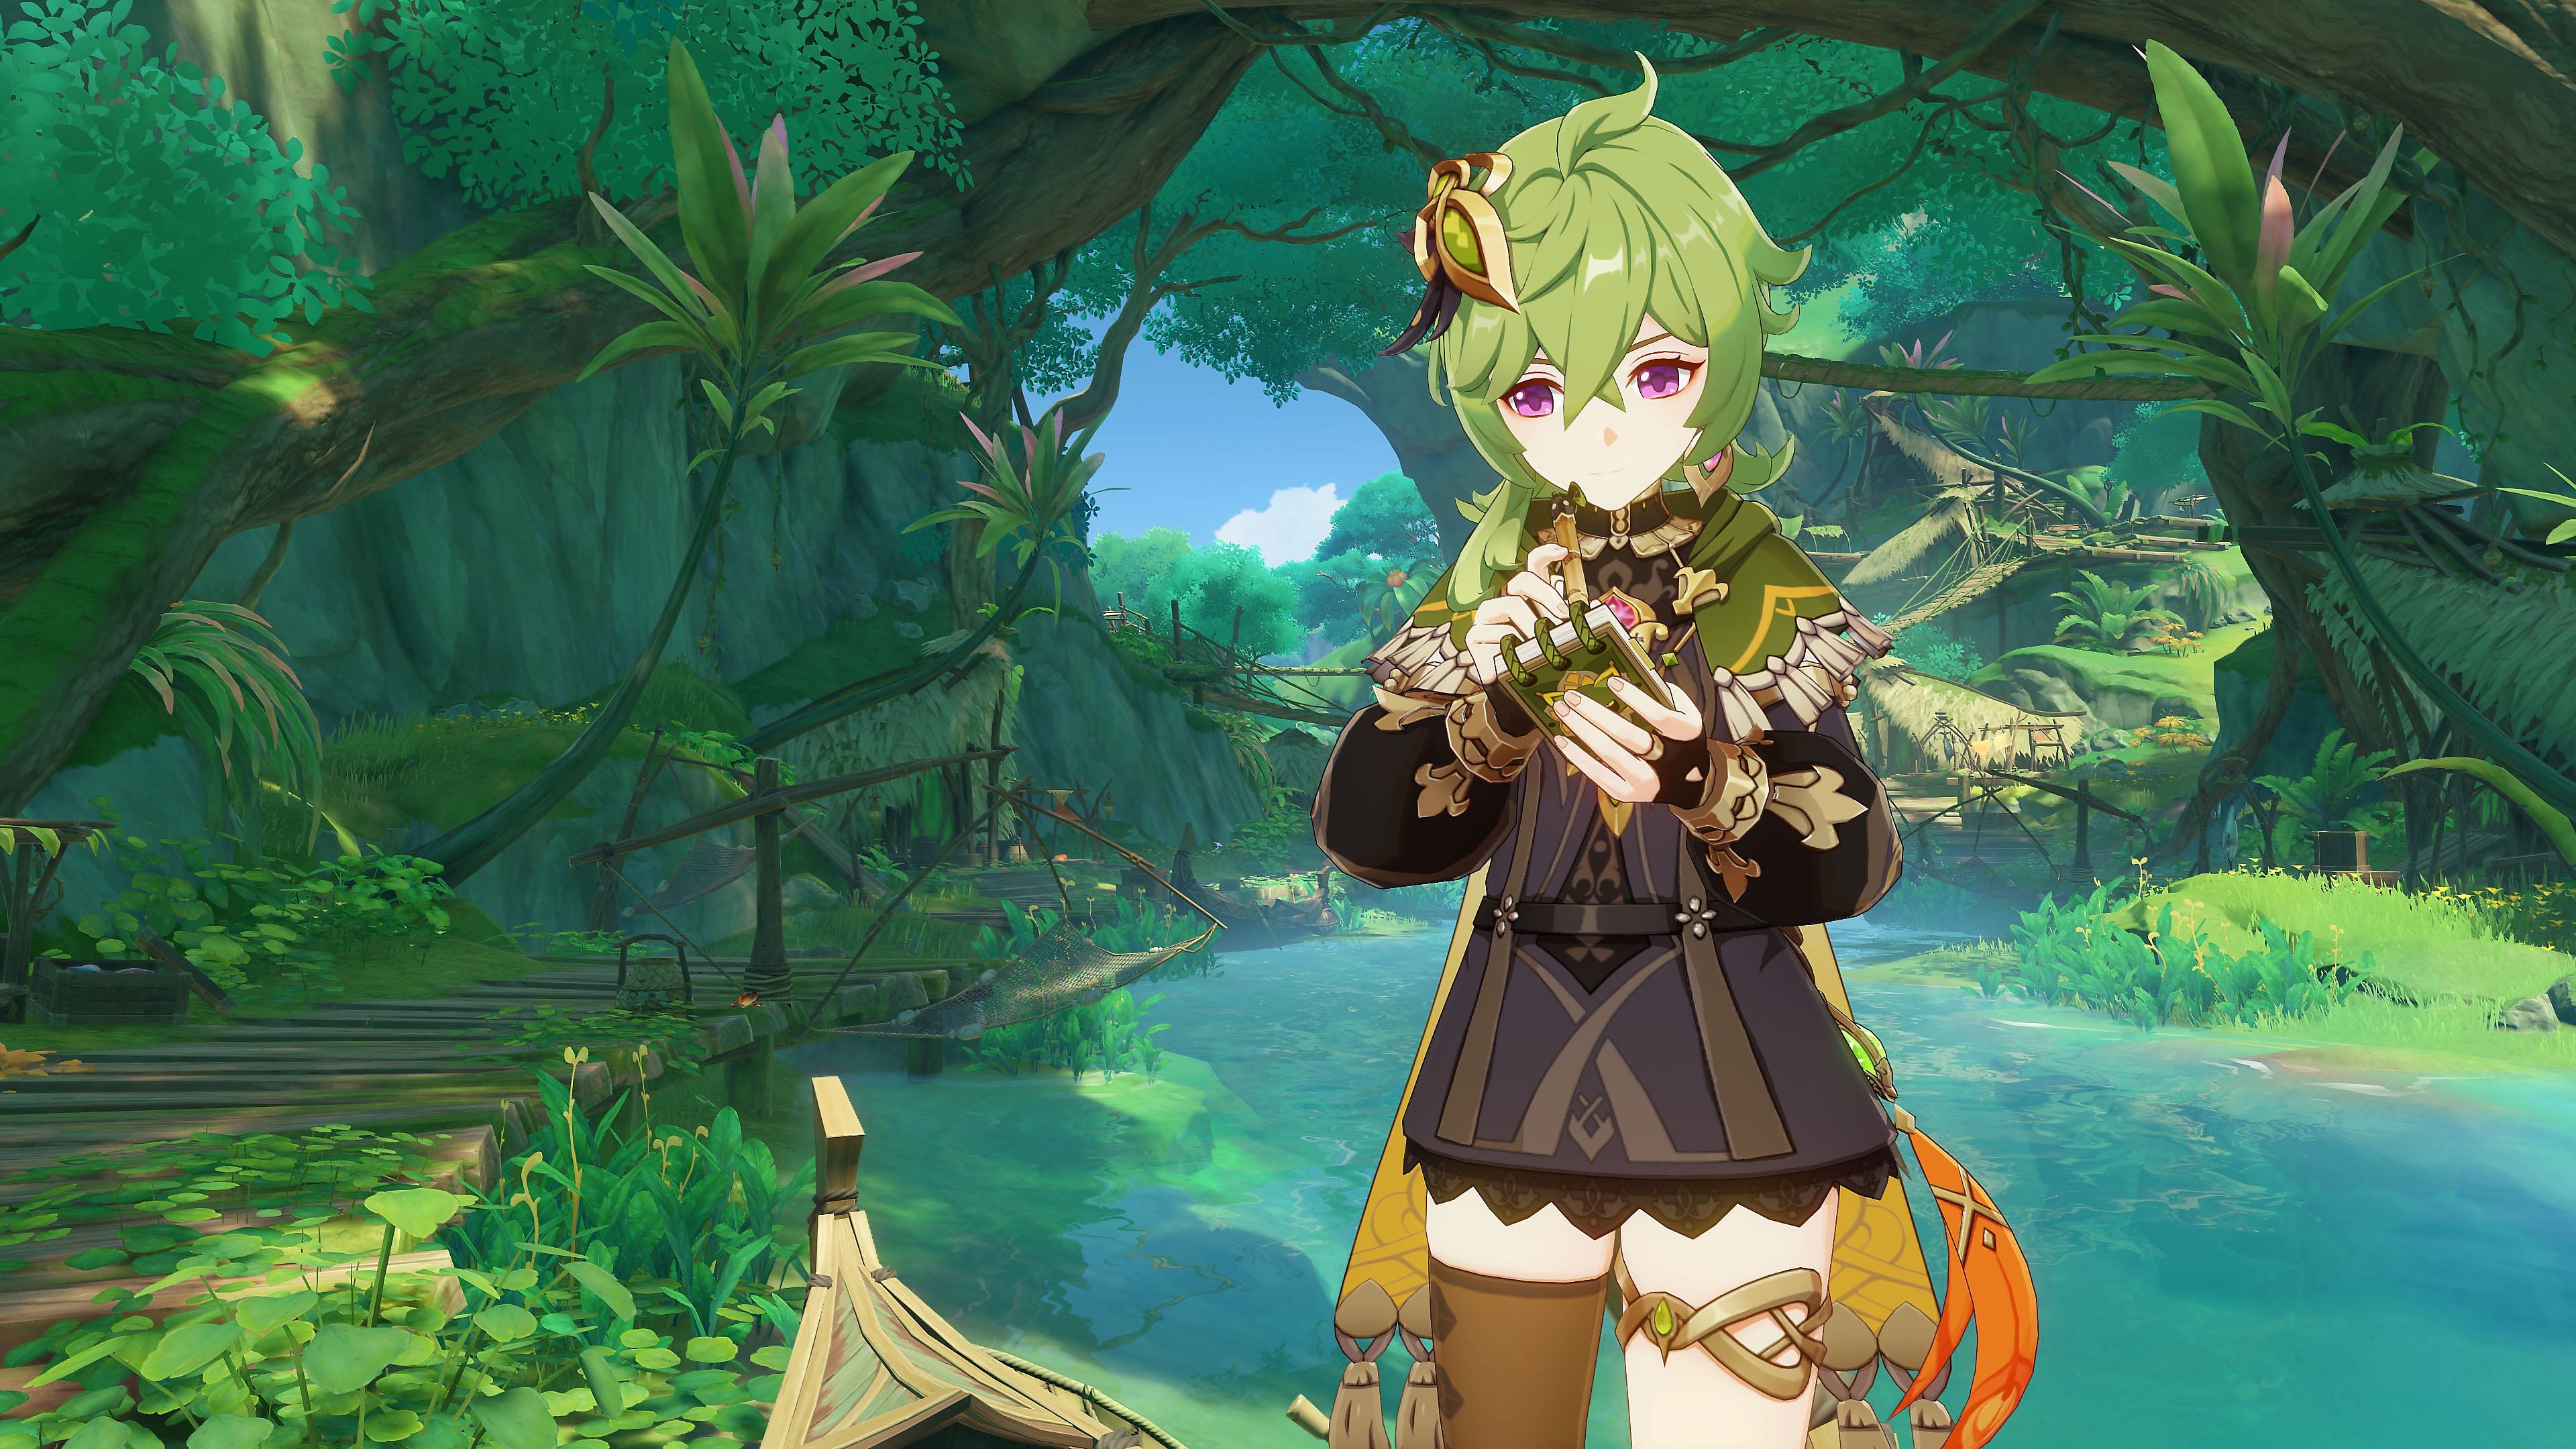 Impacto de GenShin: Captura de pantalla de la actualización 3.0 que muestra un personaje con cabellos verdes en una escena de bosque tropical